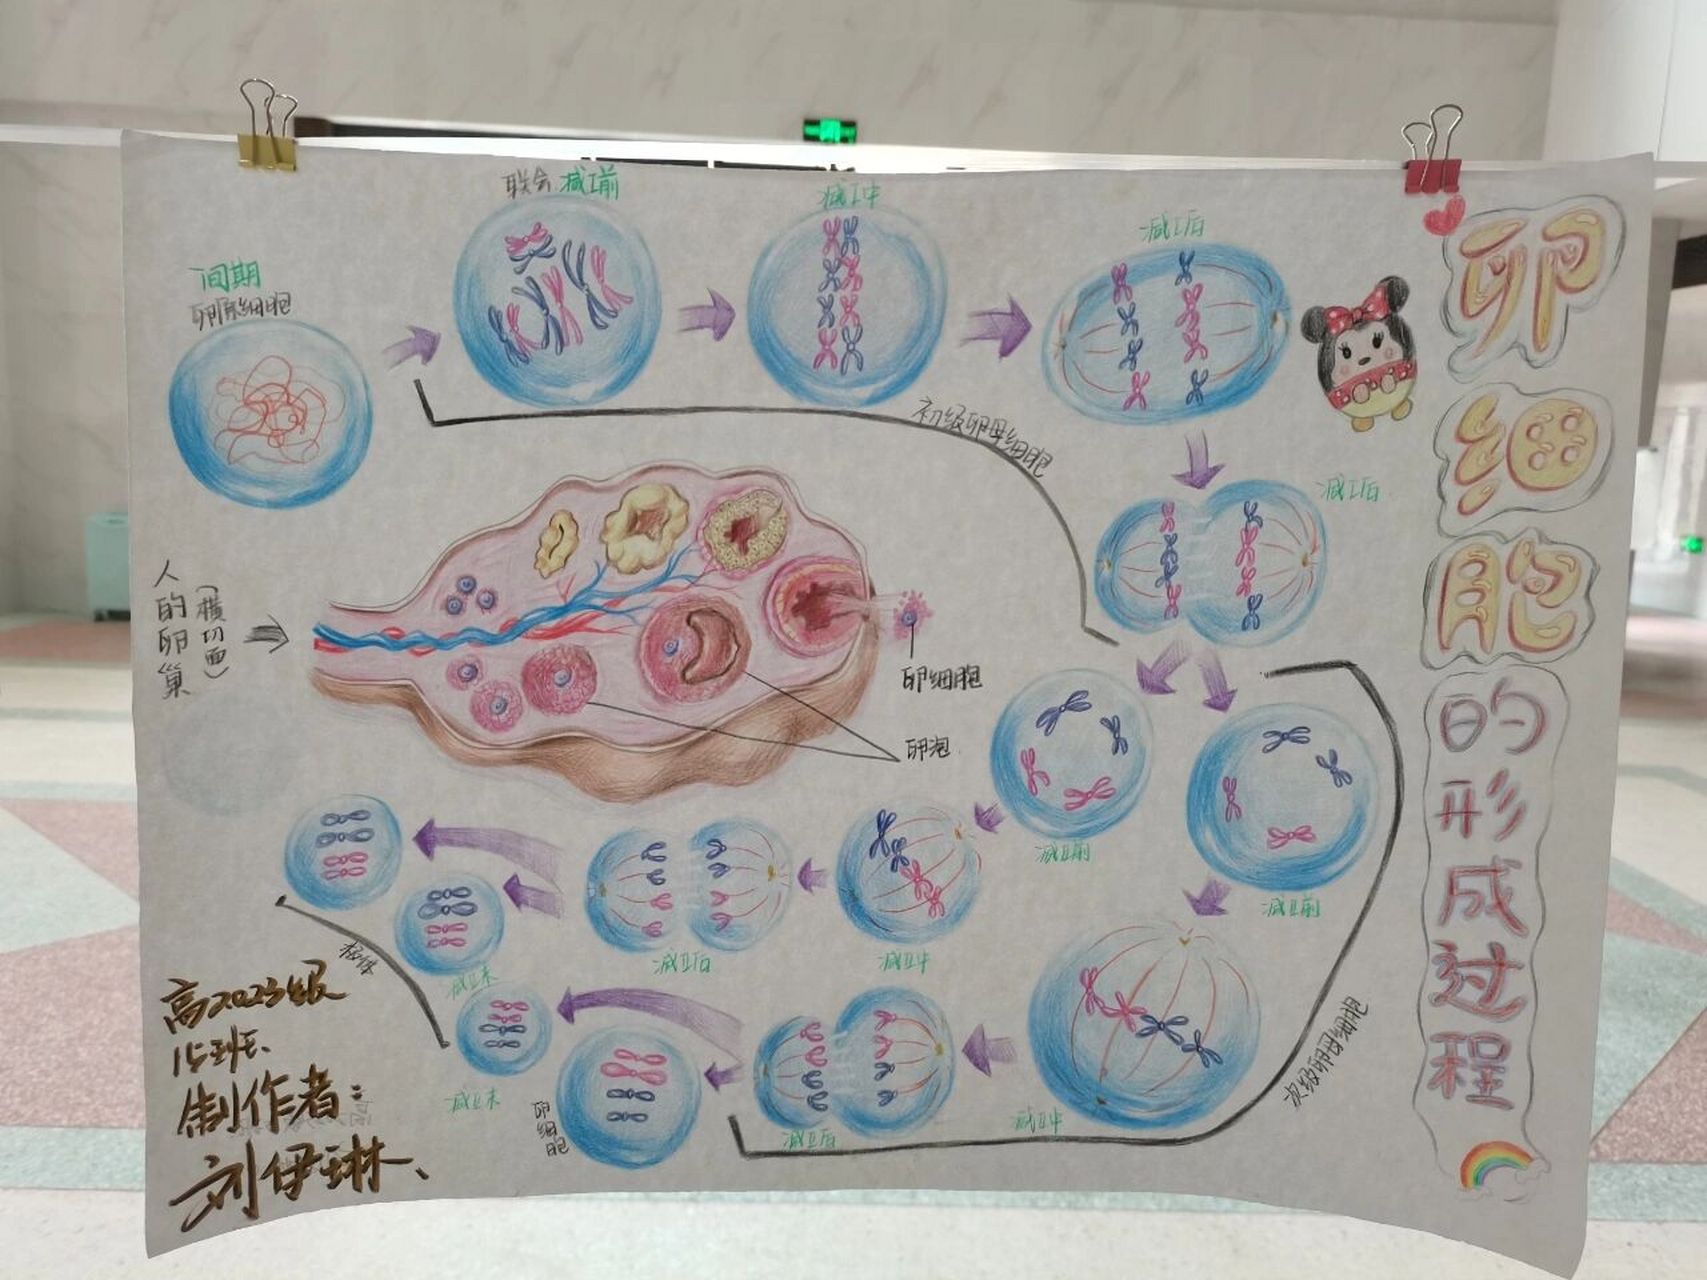 细胞减数的过程图手绘图片